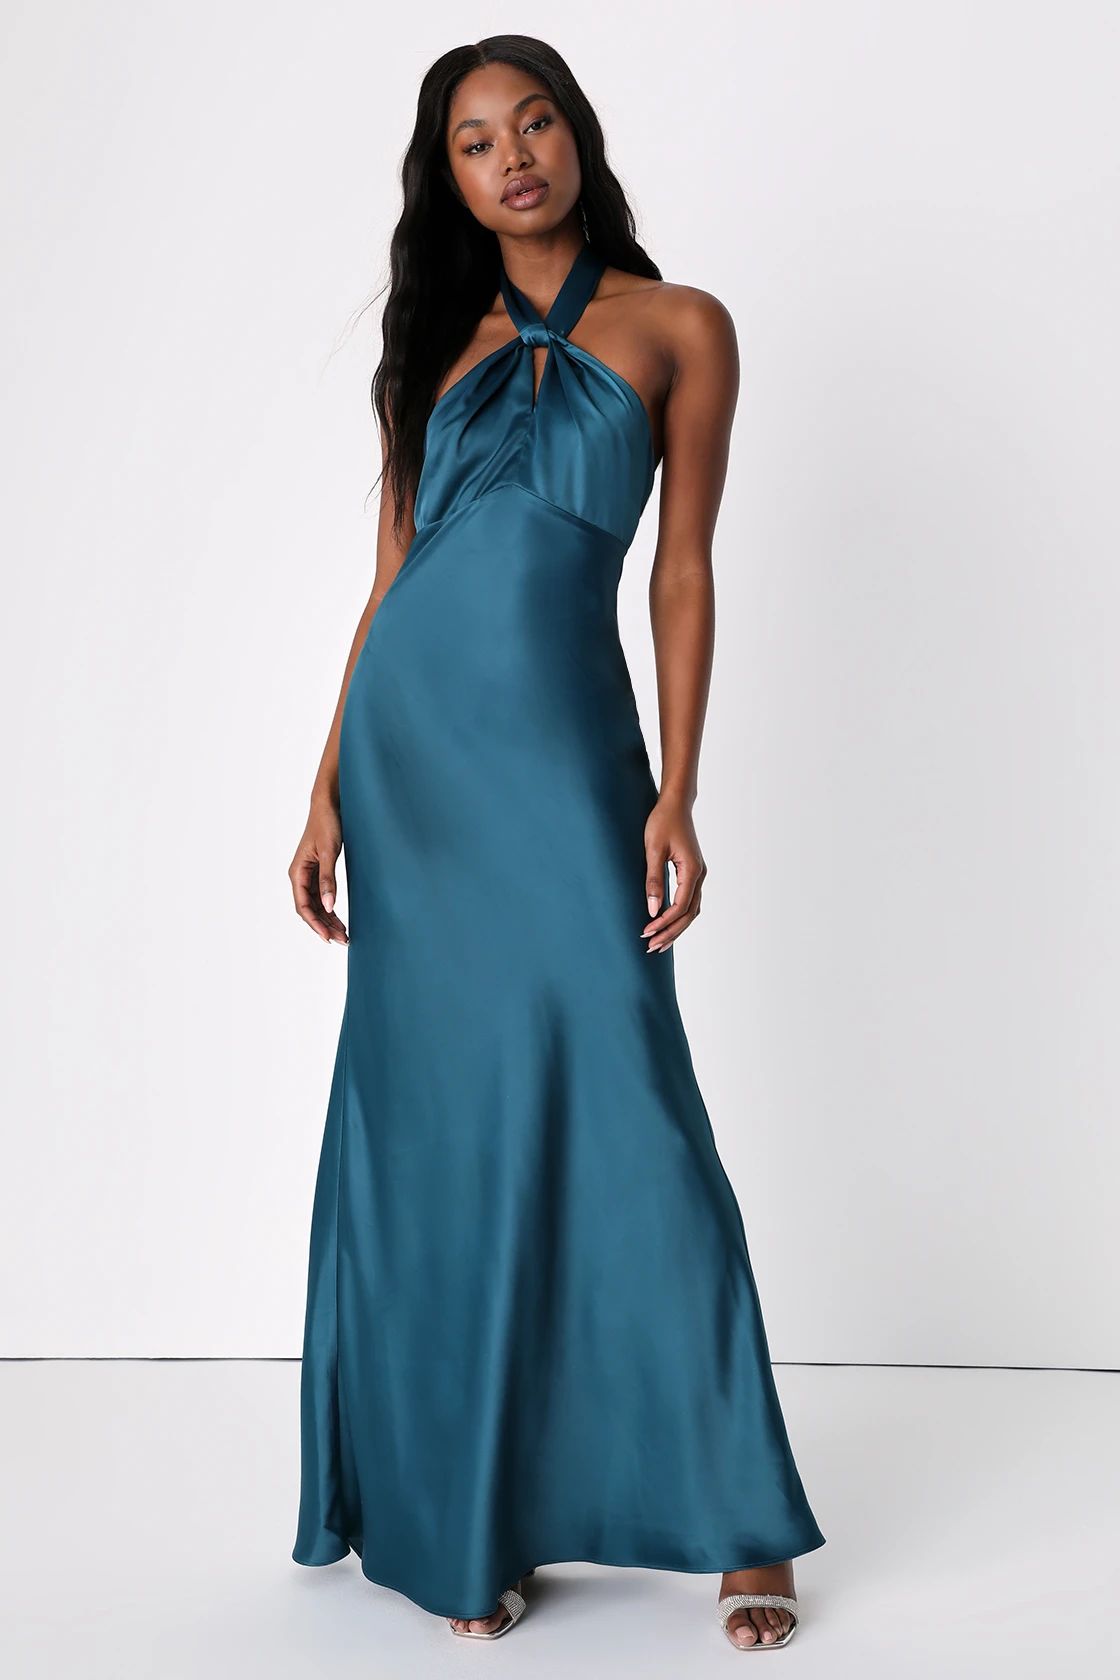 Regal Arrival Dark Teal Blue Satin Halter Mermaid Maxi Dress | Lulus (US)